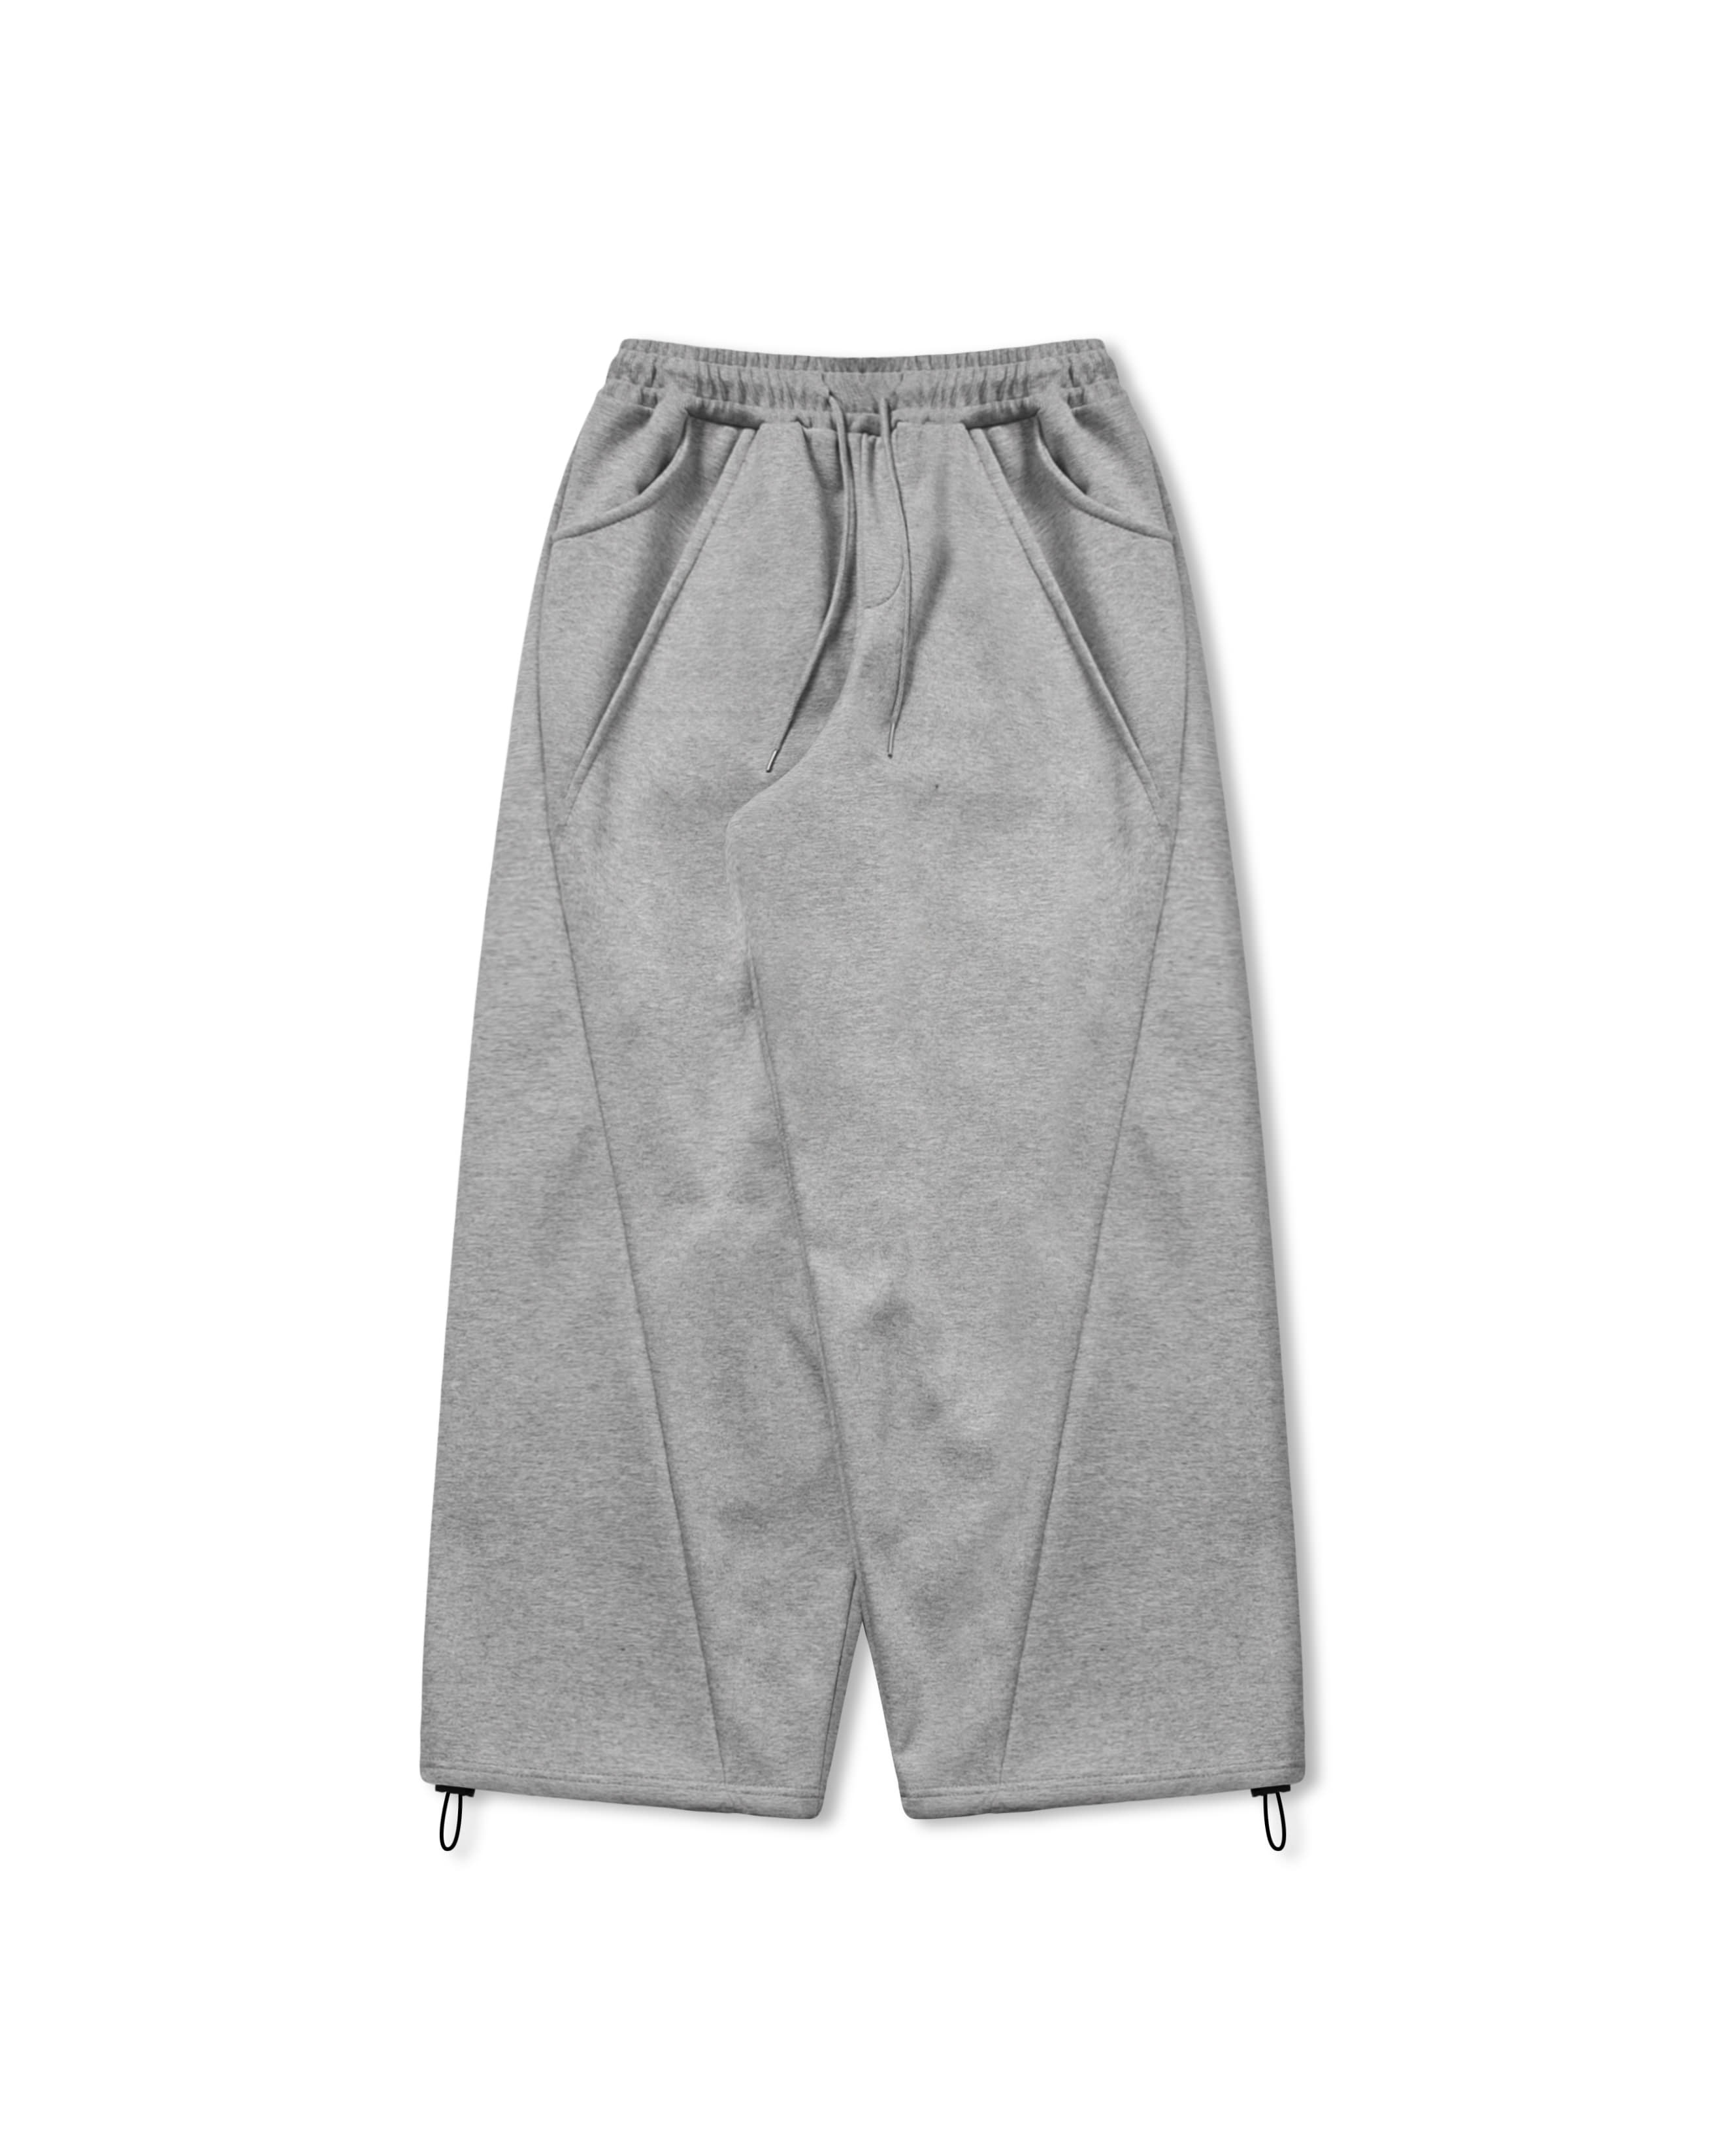 Oblique Incision Sweat Pants - Melange Grey